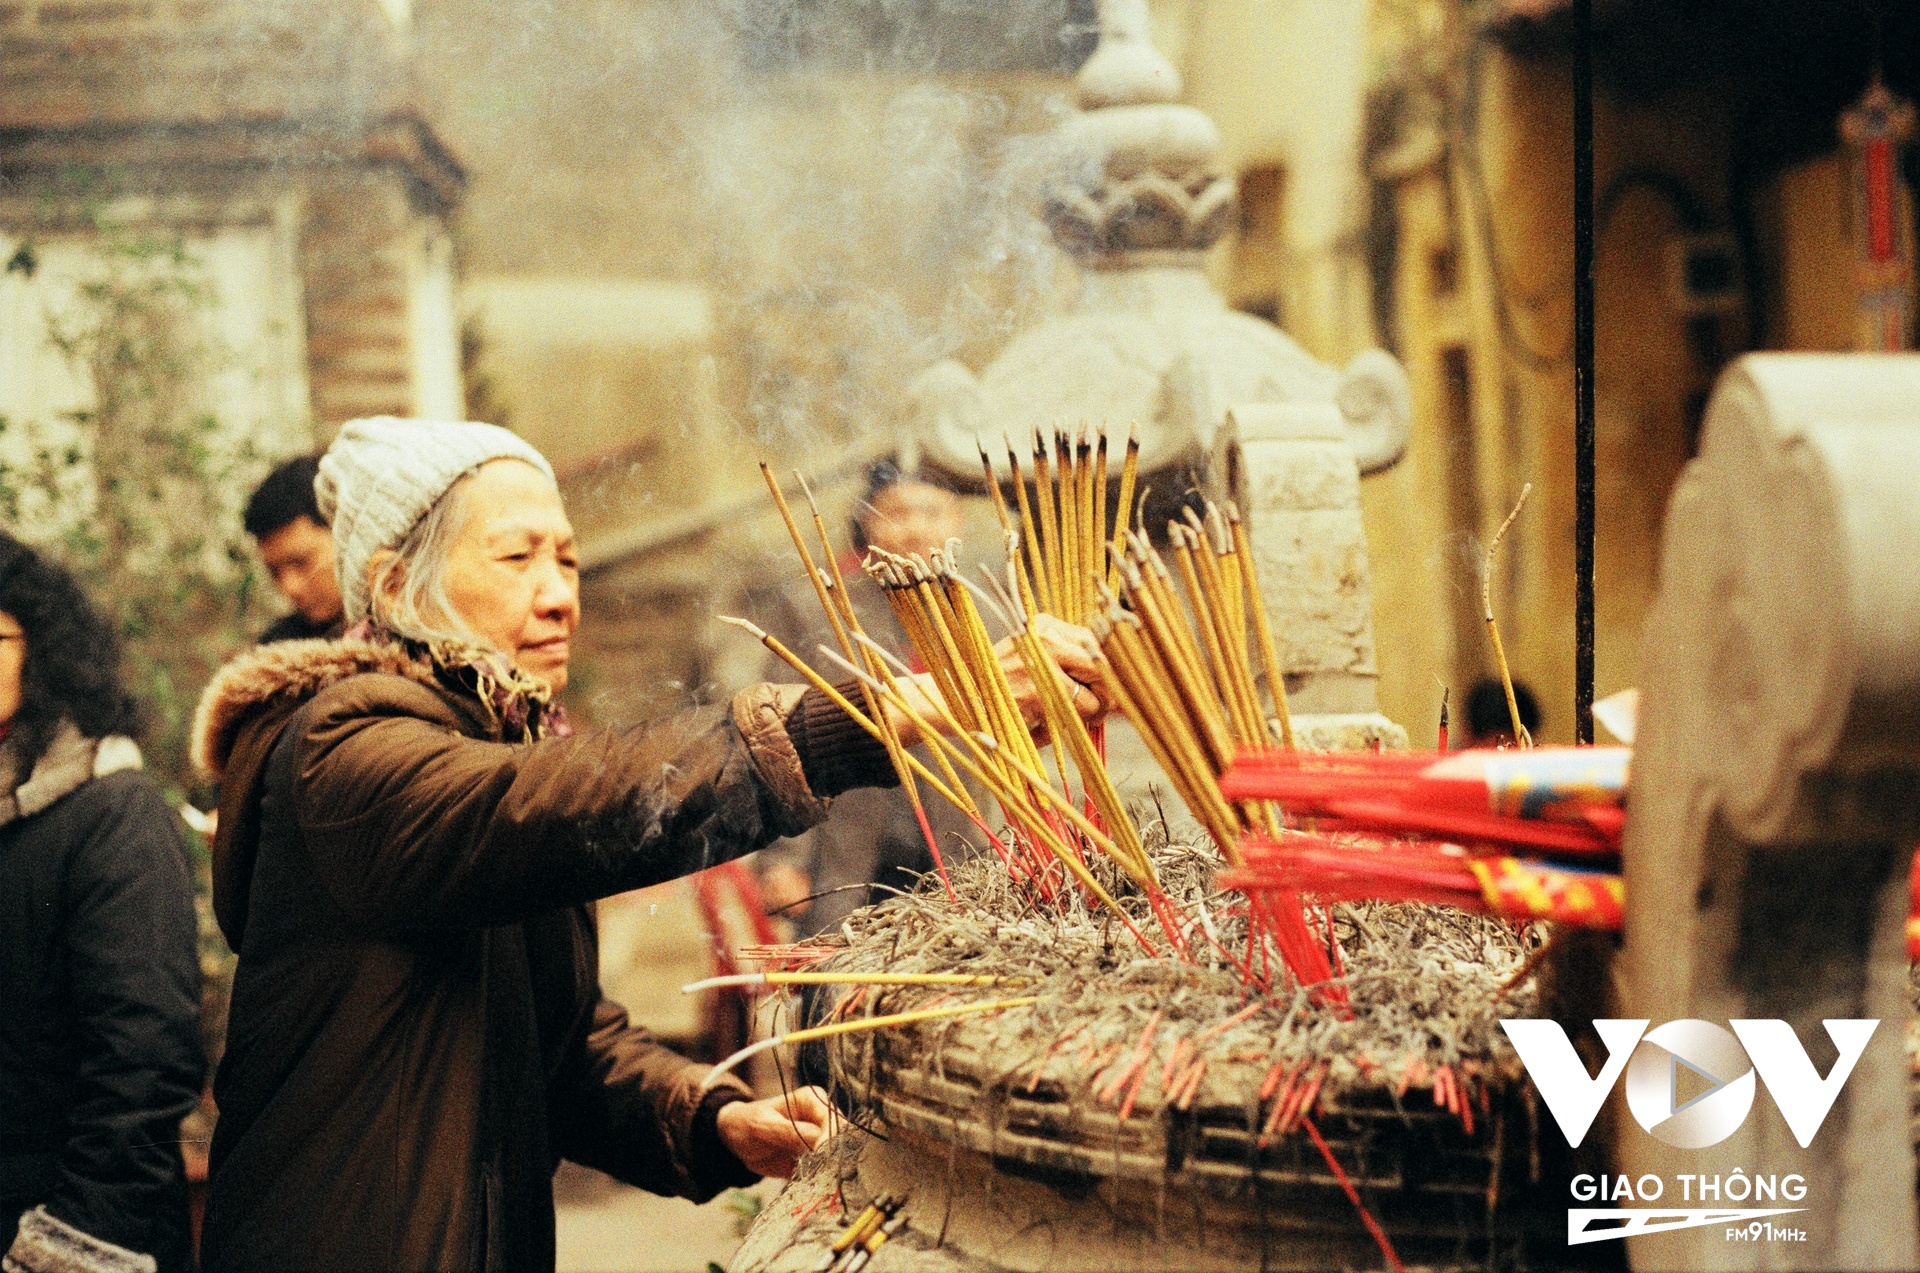 Chùa Bà Đá, một ngôi chùa khá nổi tiếng ngay sát Hồ Hoàn Kiếm là nơi rất nhiều người Hà Nội đến thắp hương mỗi dịp lễ tết